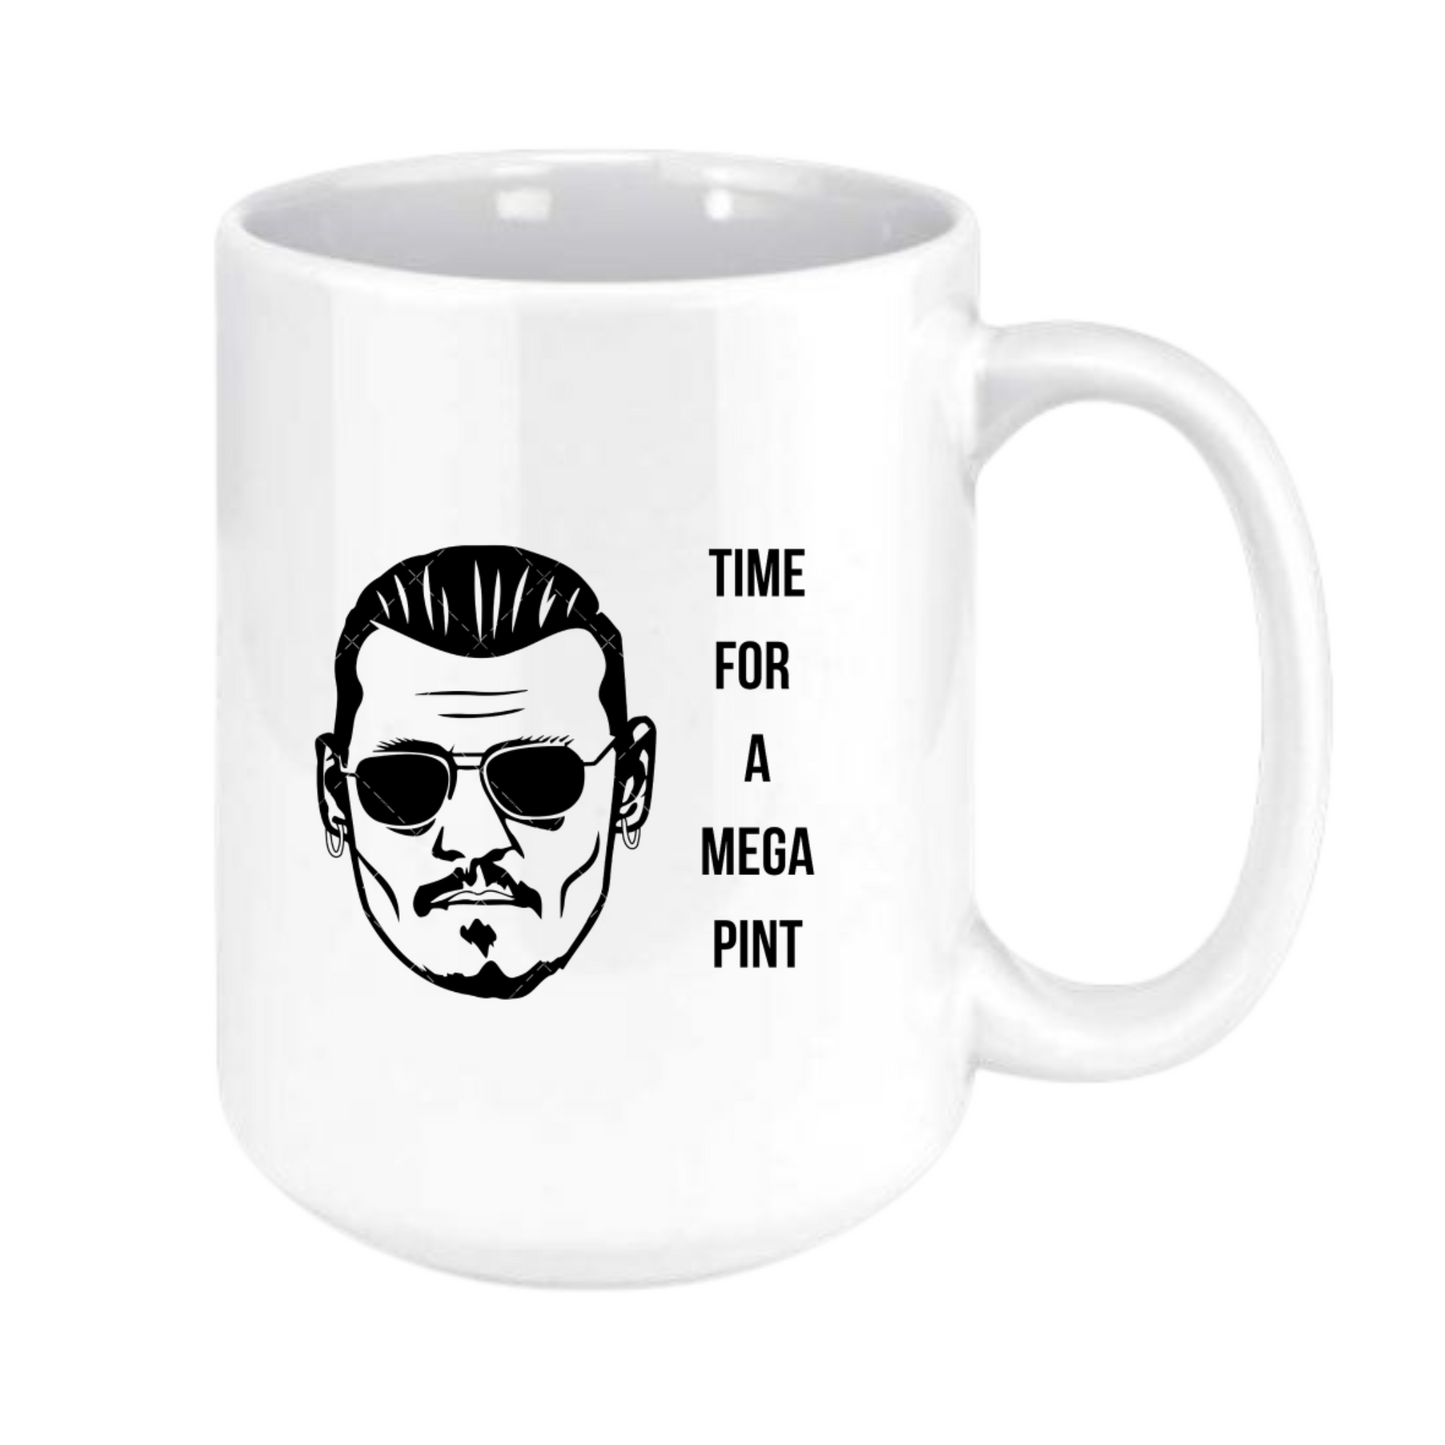 Time for a mega pint mug